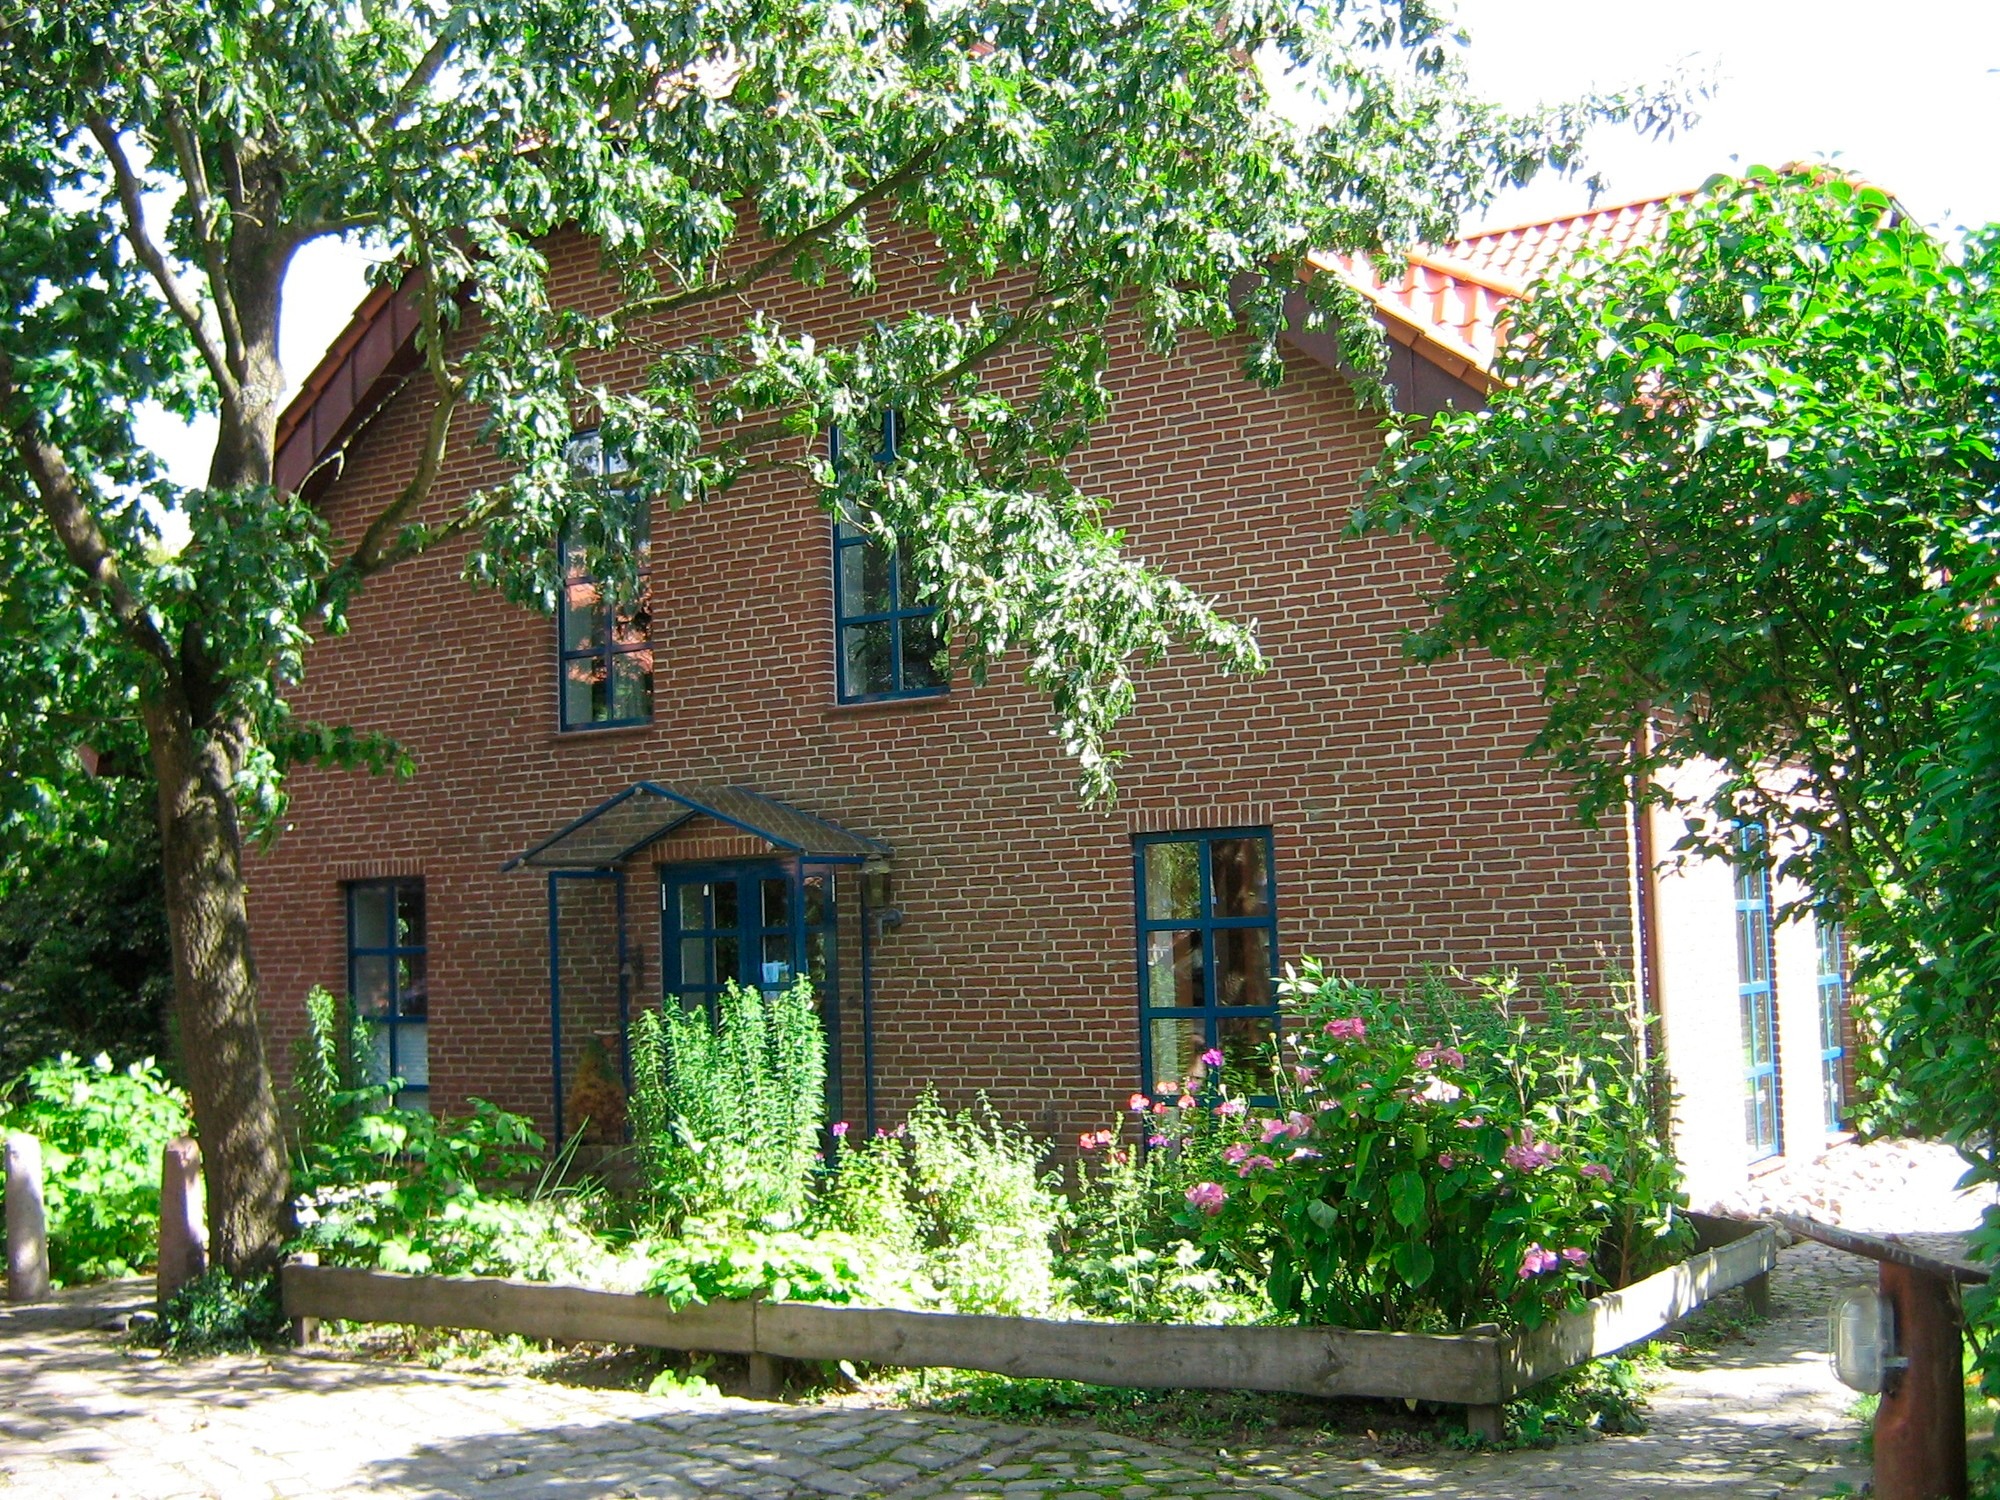 Haupthaus-Osterbyholz Ferienwohnung in Schleswig Holstein